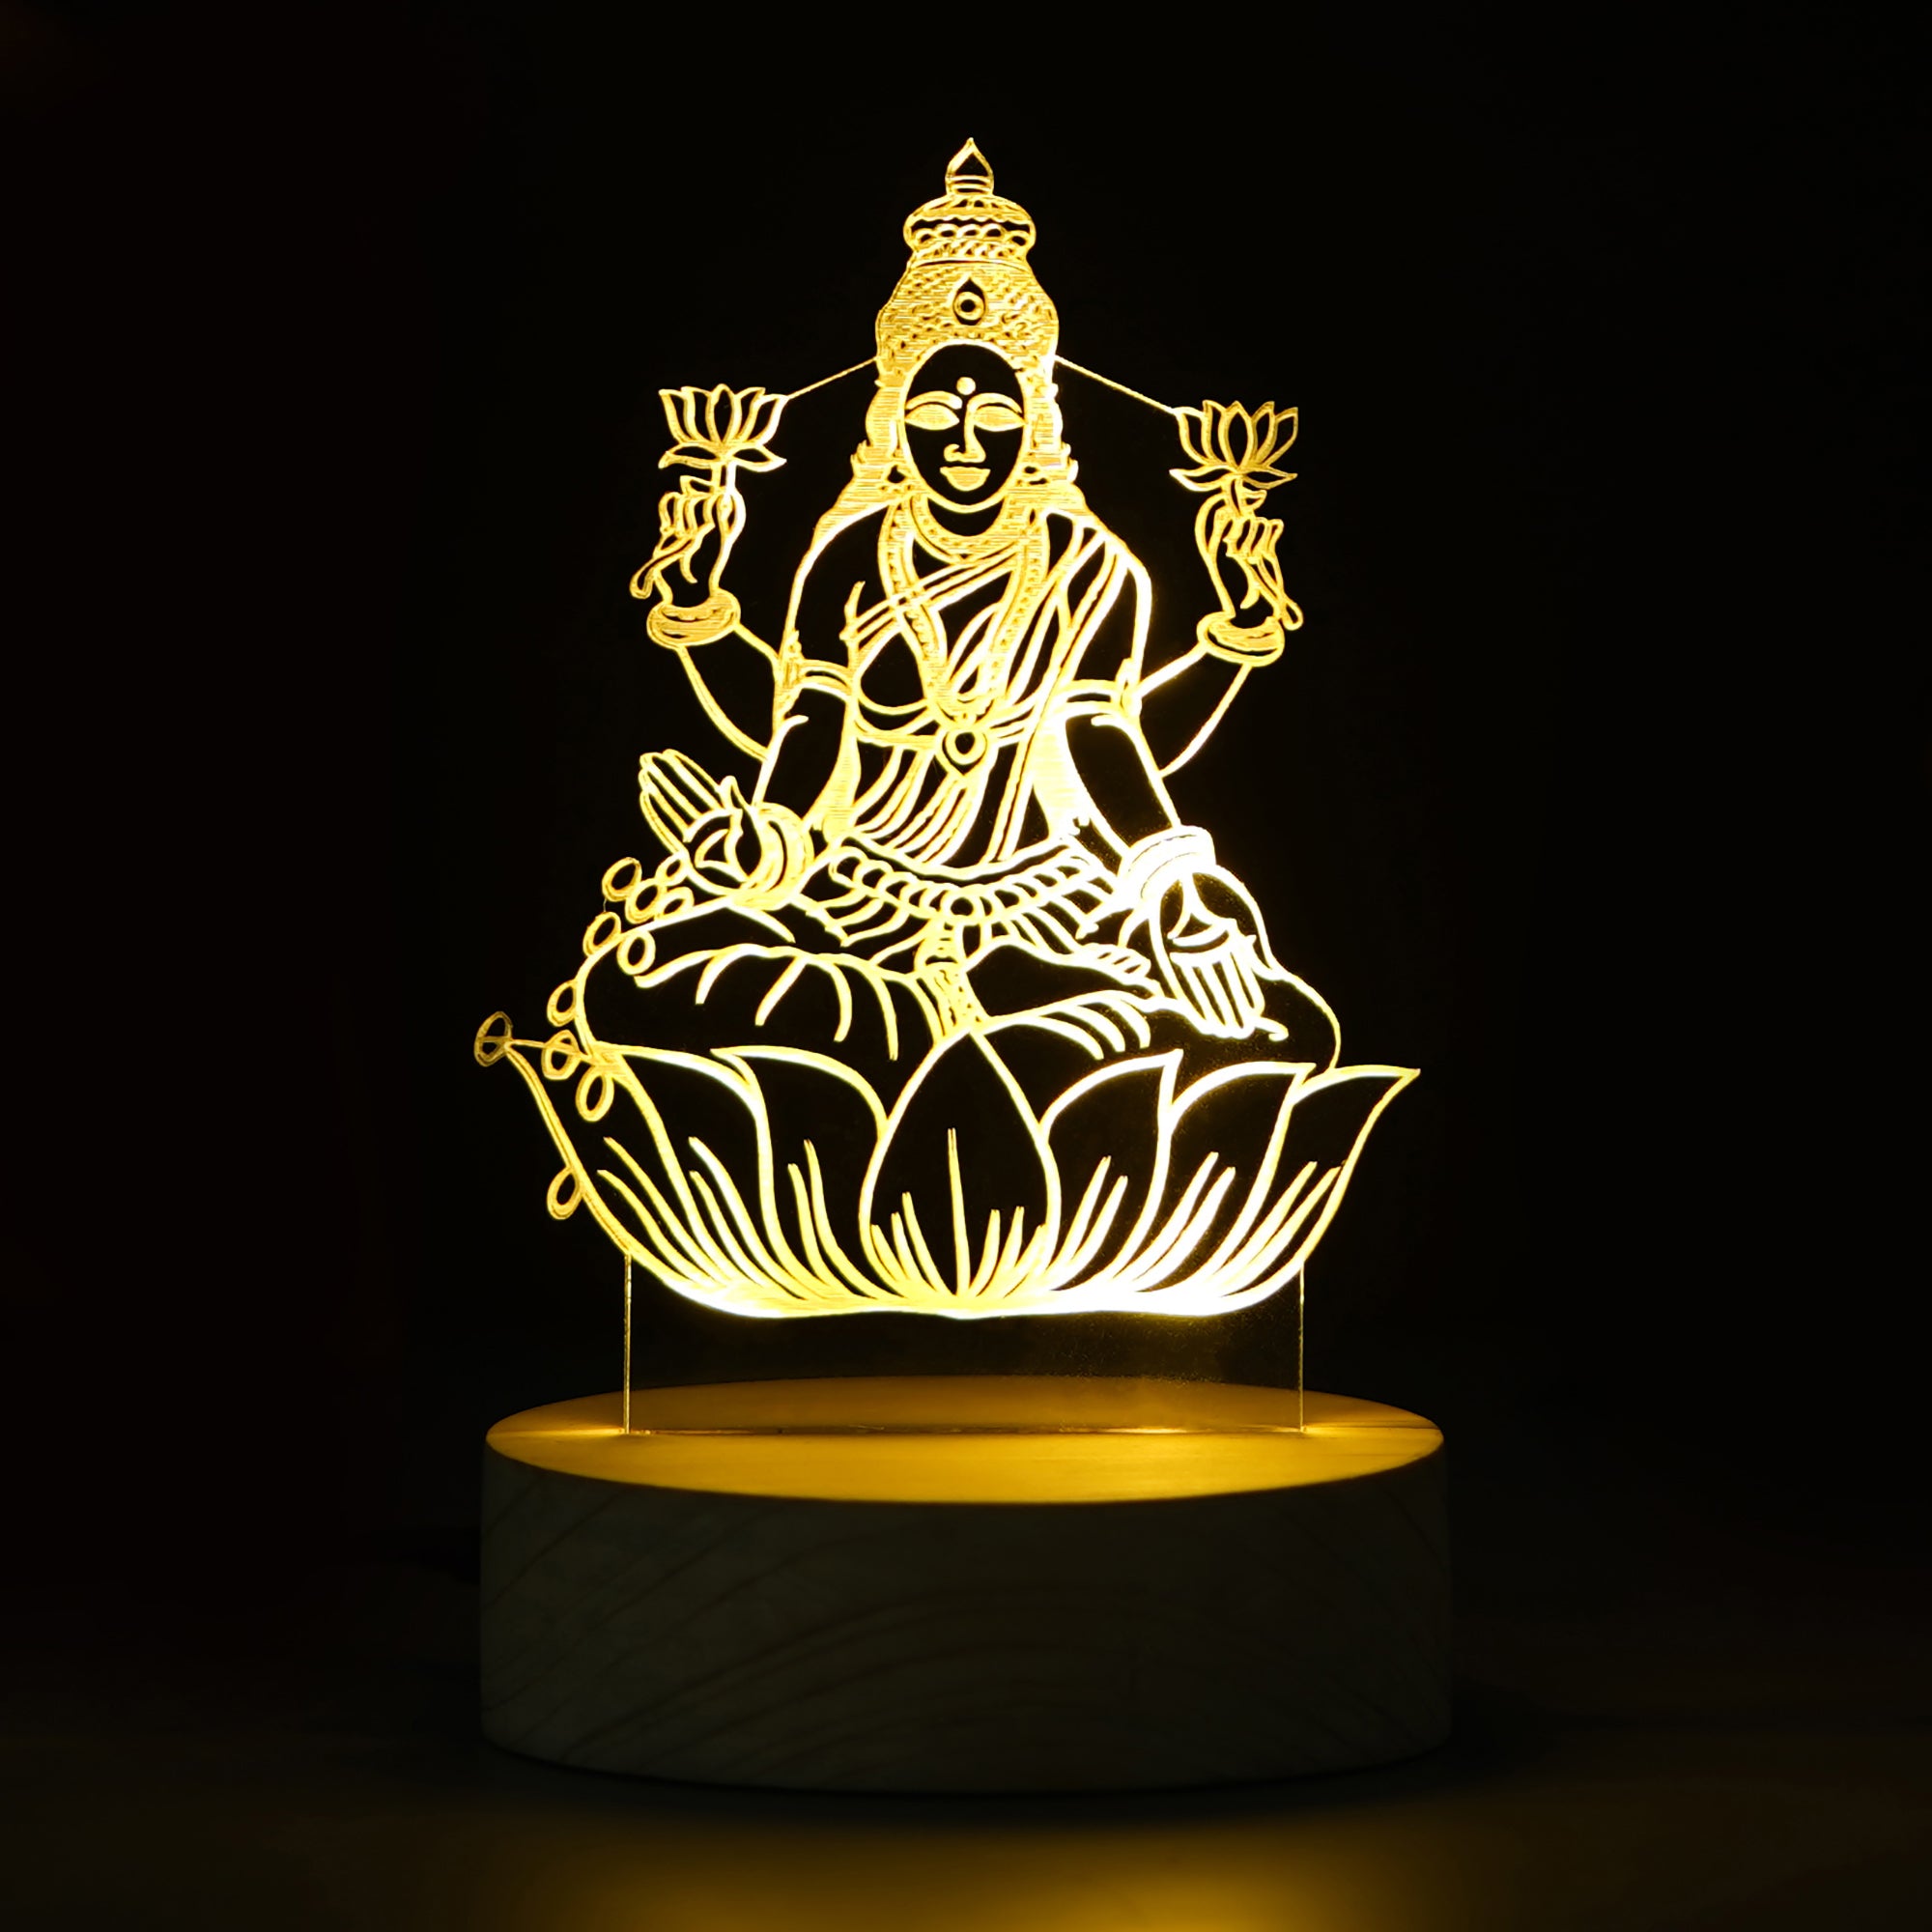 Goddess Laxmi Design Carved on Acrylic & Wood Base Night Lamp 1